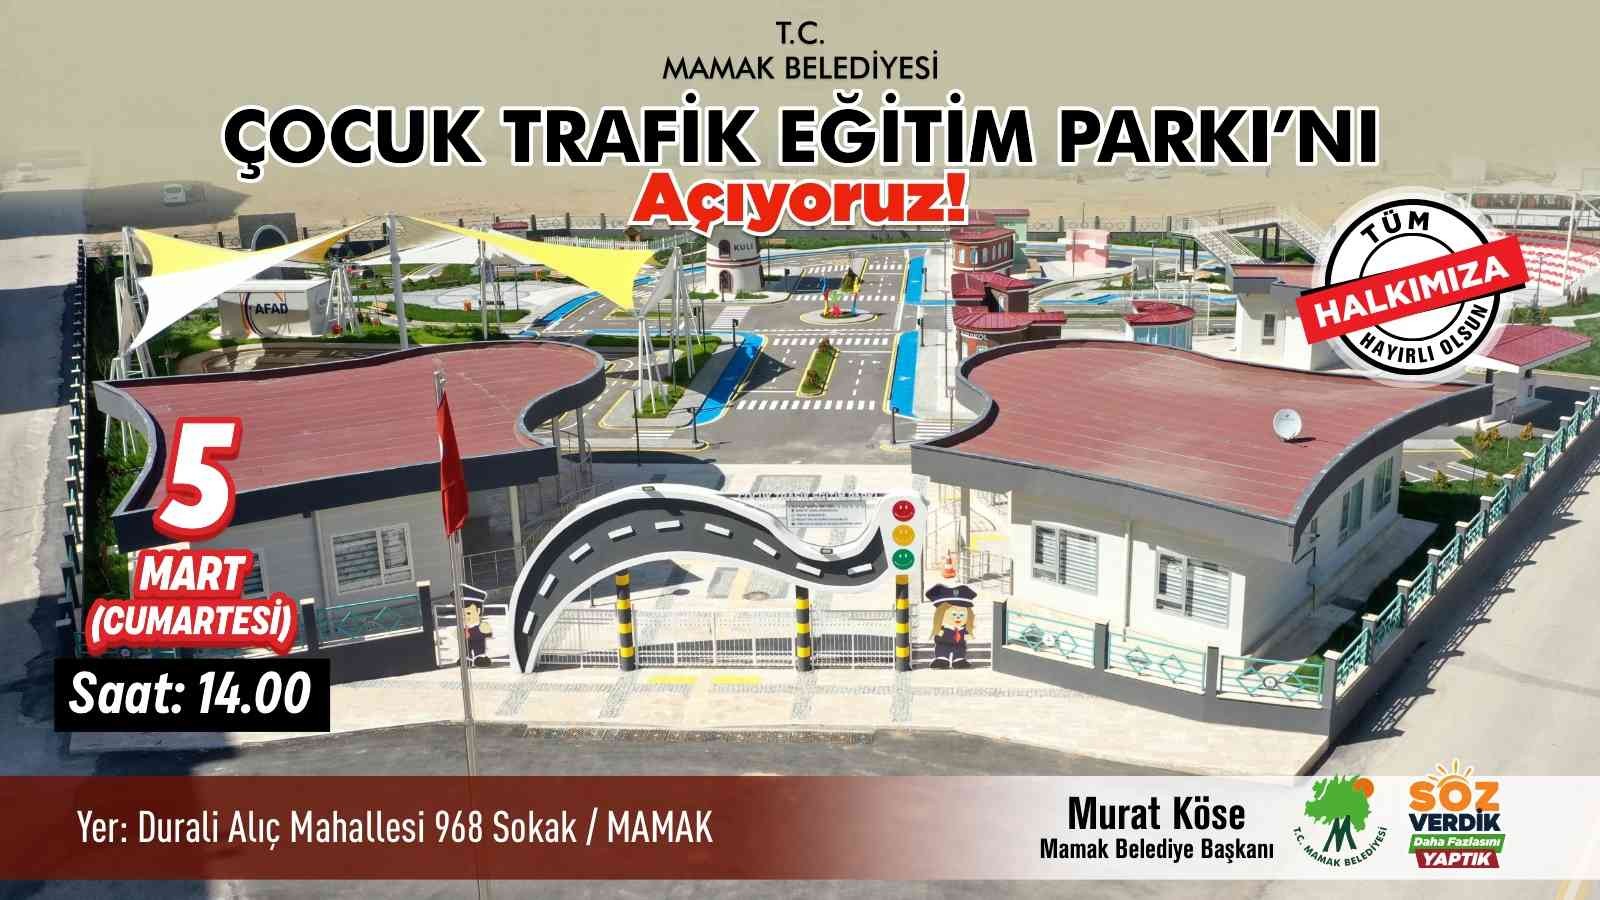 Mamak’taki Çocuk Trafik Eğitim Parkı hizmete açılıyor #ankara